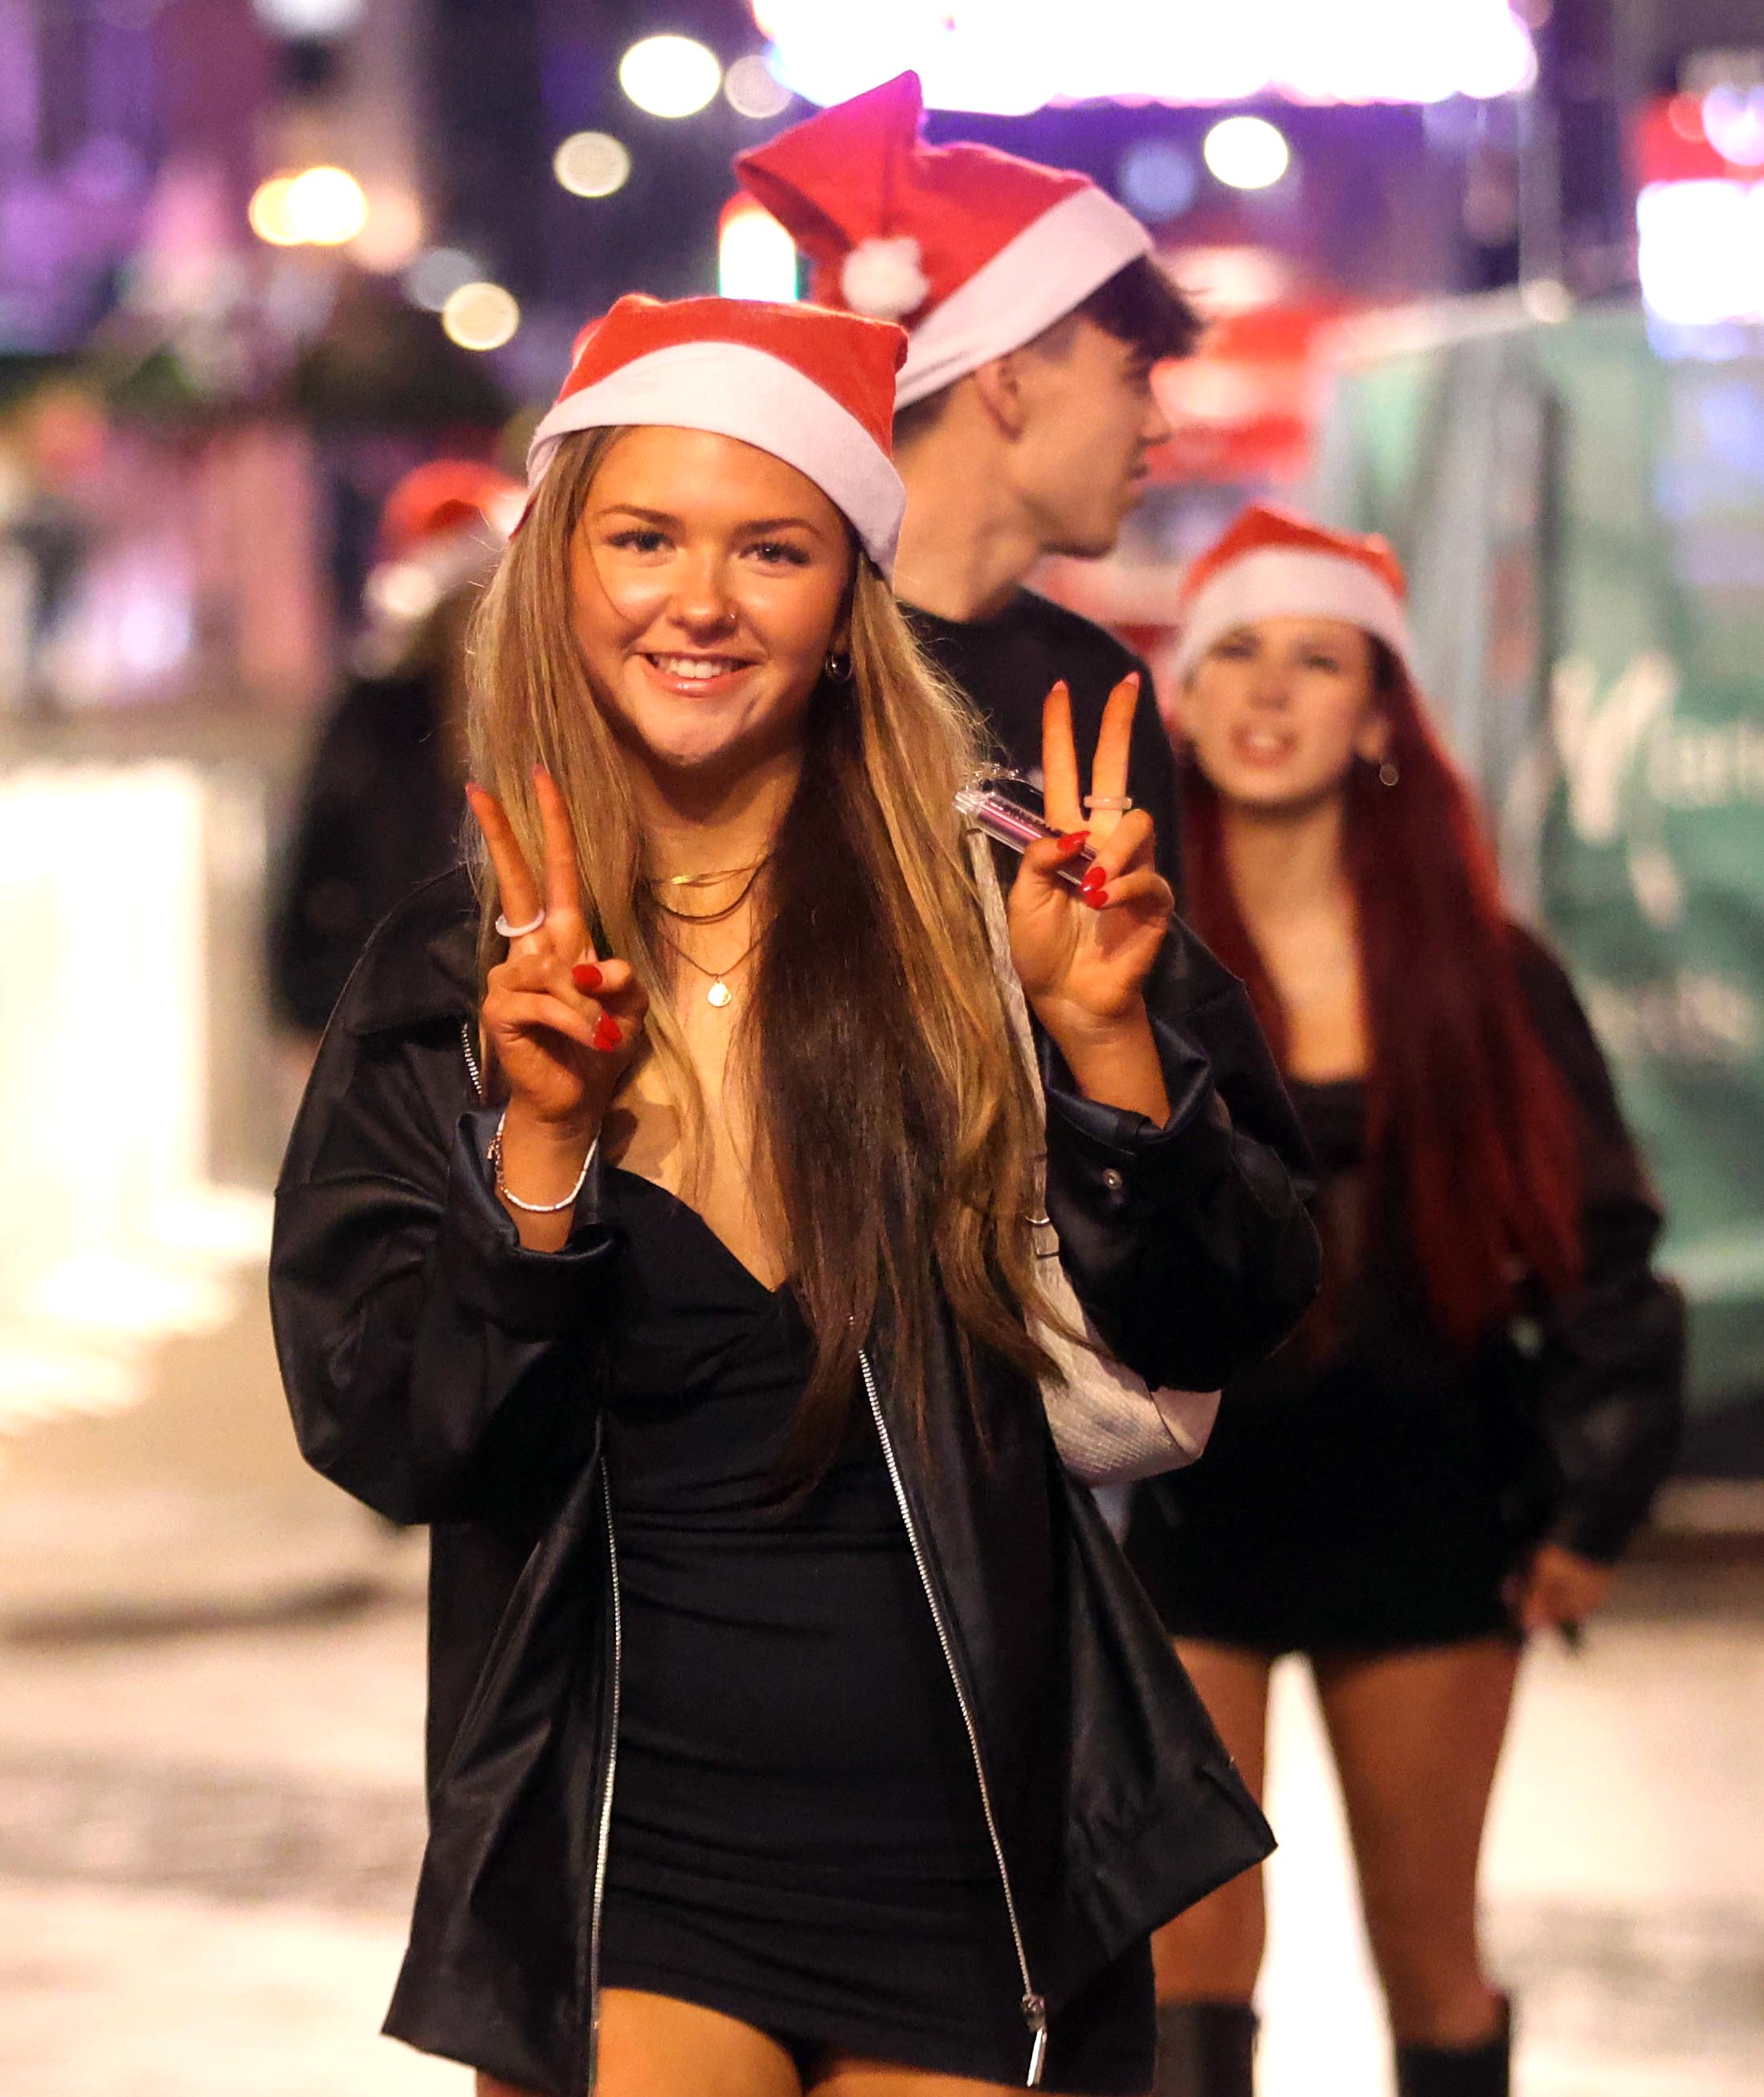 Einige trugen eine Anspielung auf Weihnachten mit Weihnachtsmützen und einfachen Party-Outfits